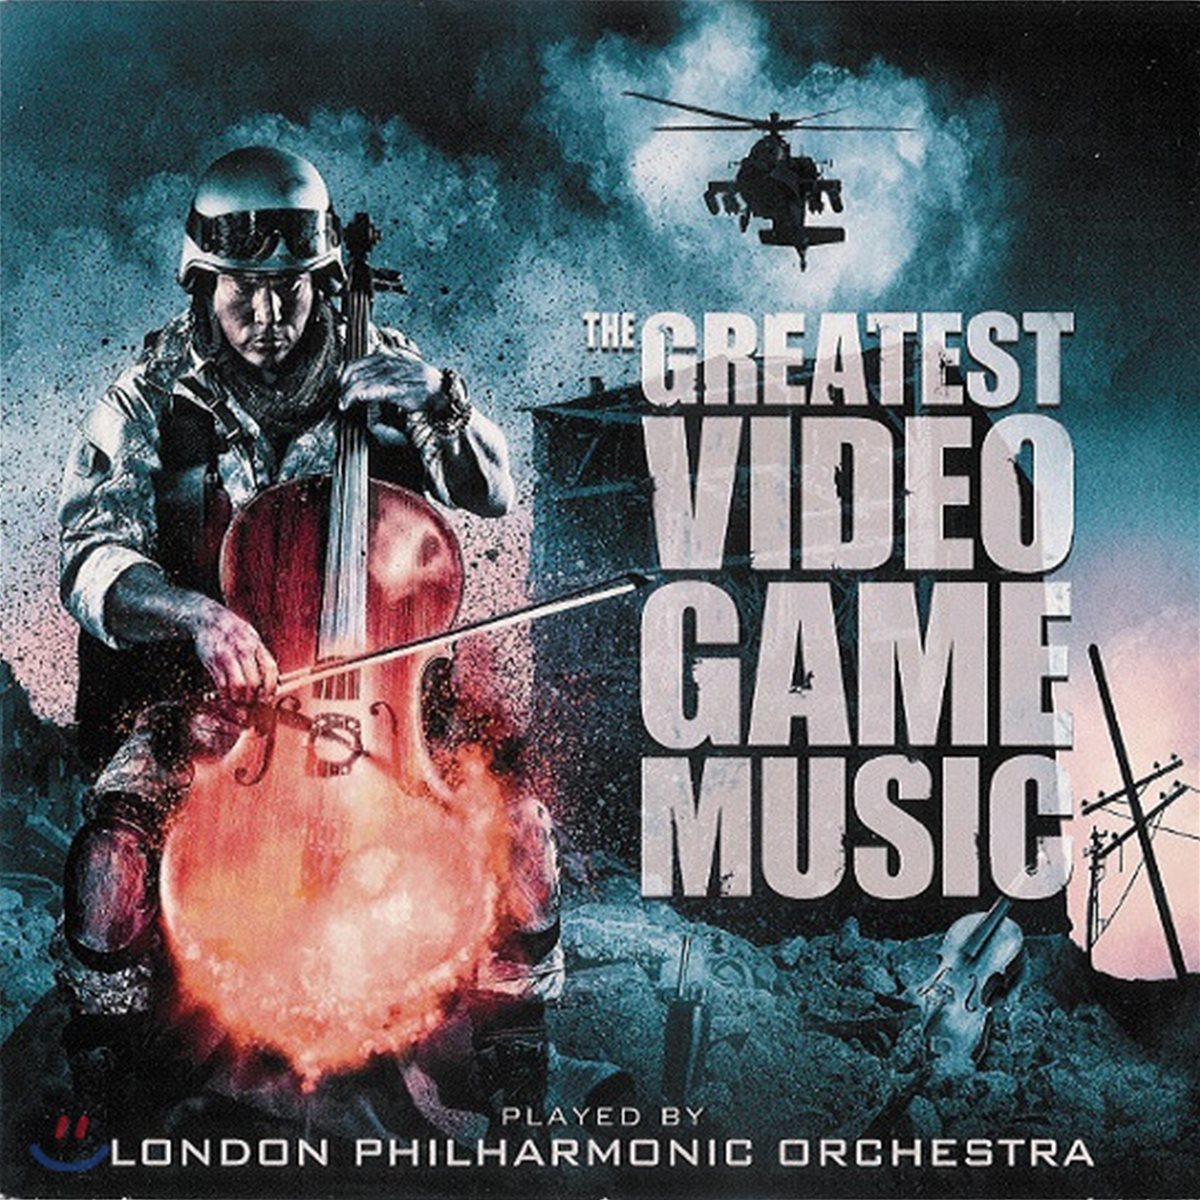 런던 필하모닉 오케스트라가 연주하는 게임 음악 모음 1집 (London Philharmonic Orchestra - The Greatest Video Game Music)